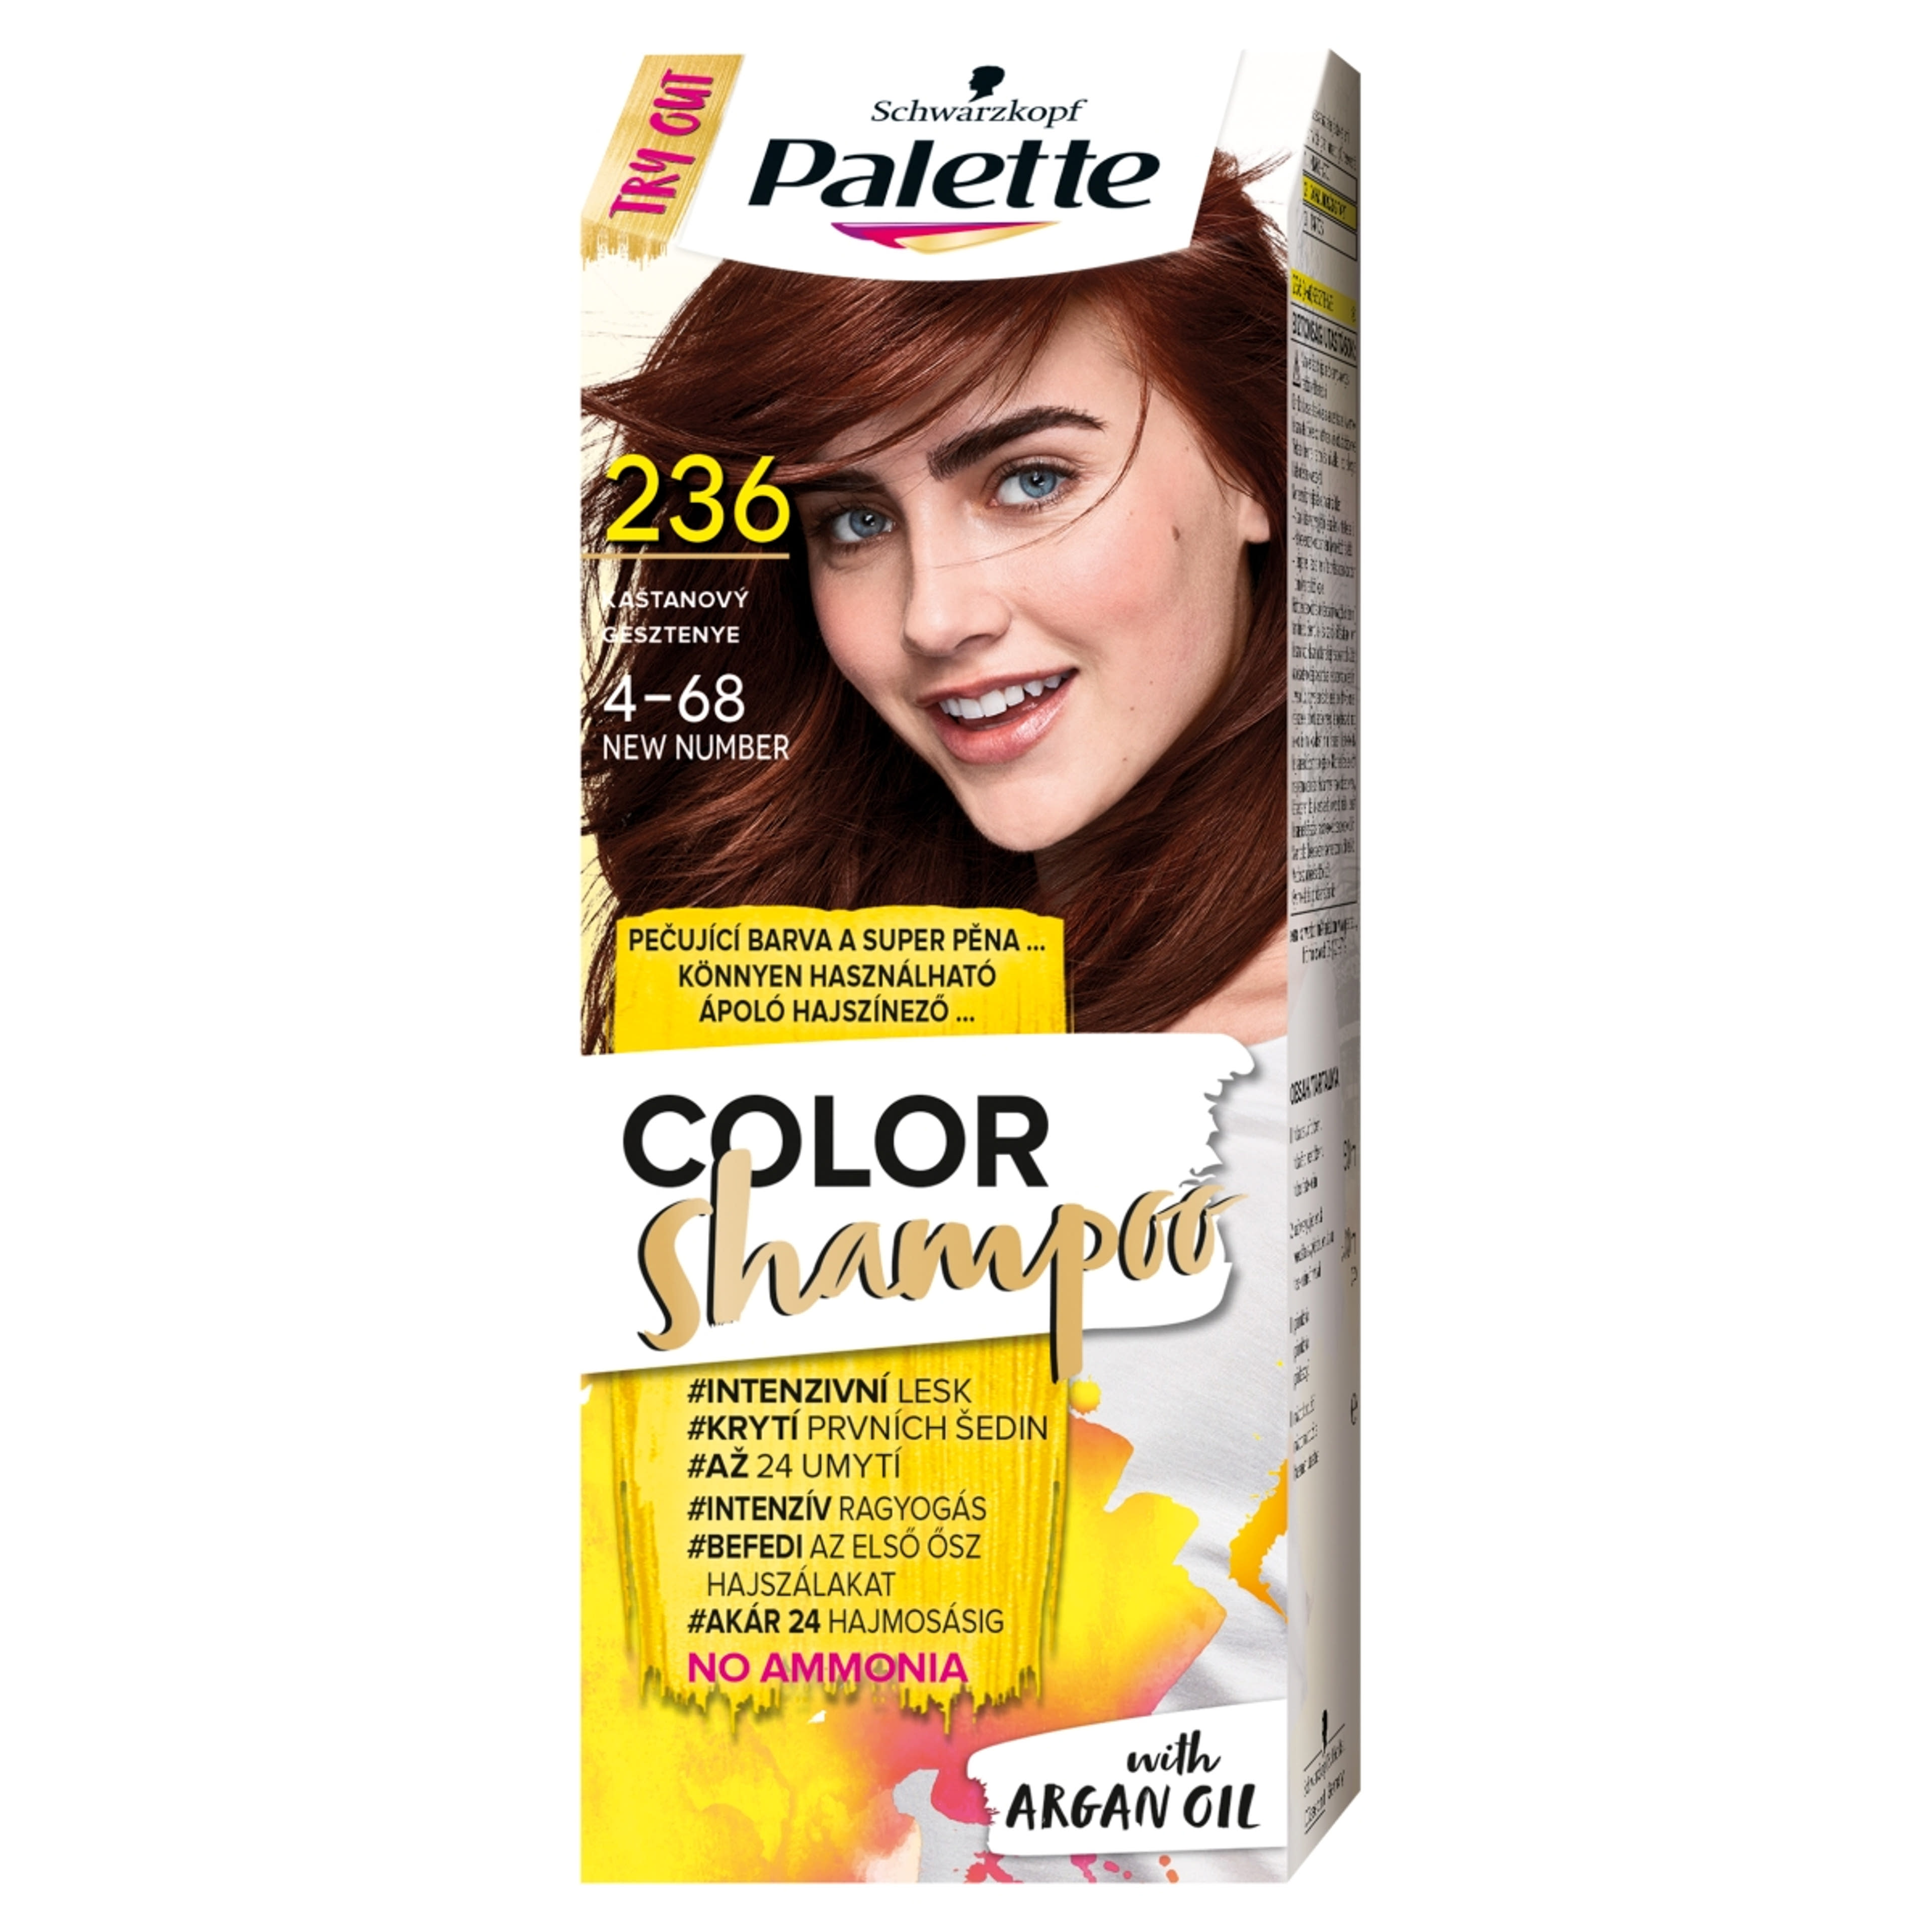 Schwarzkopf Palette Color Shampoo hajfesték 236 gesztenye - 1 db